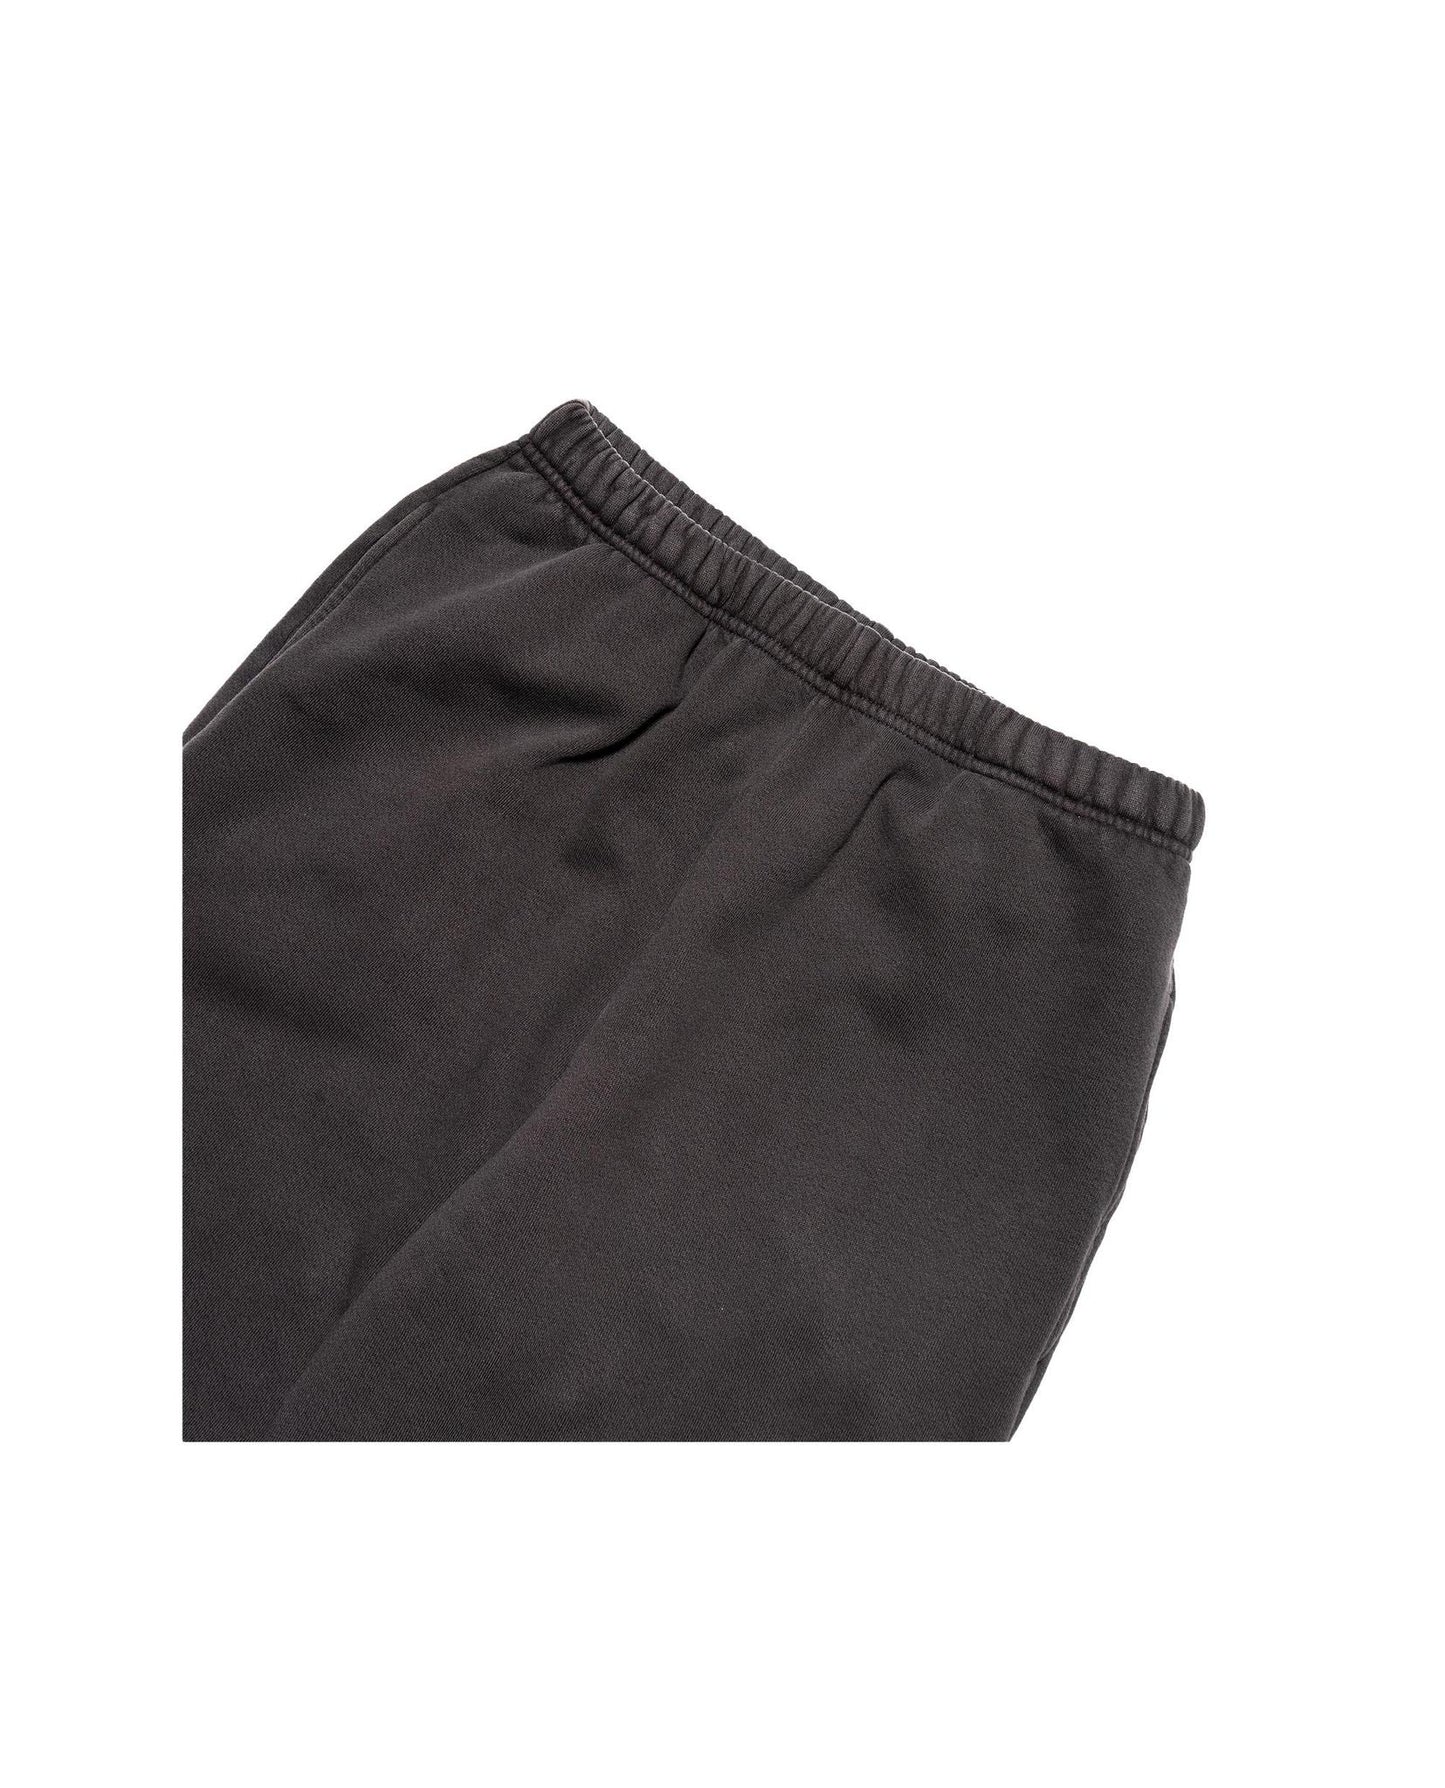 
                    
                      Les Tien Puddle Pant Vintage Black
                    
                  